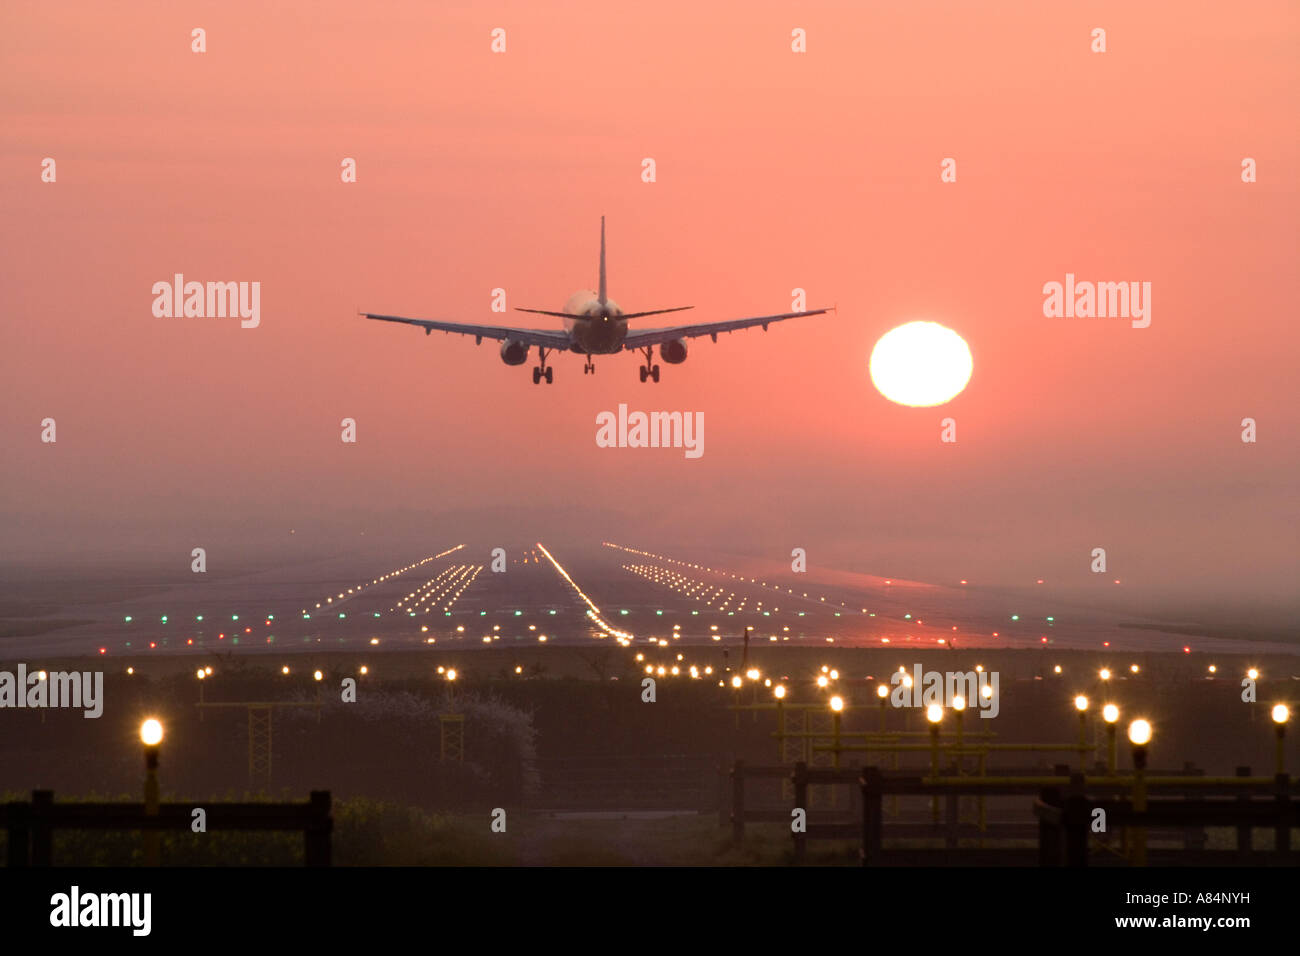 Aeroplane landing at sunrise. Stock Photo